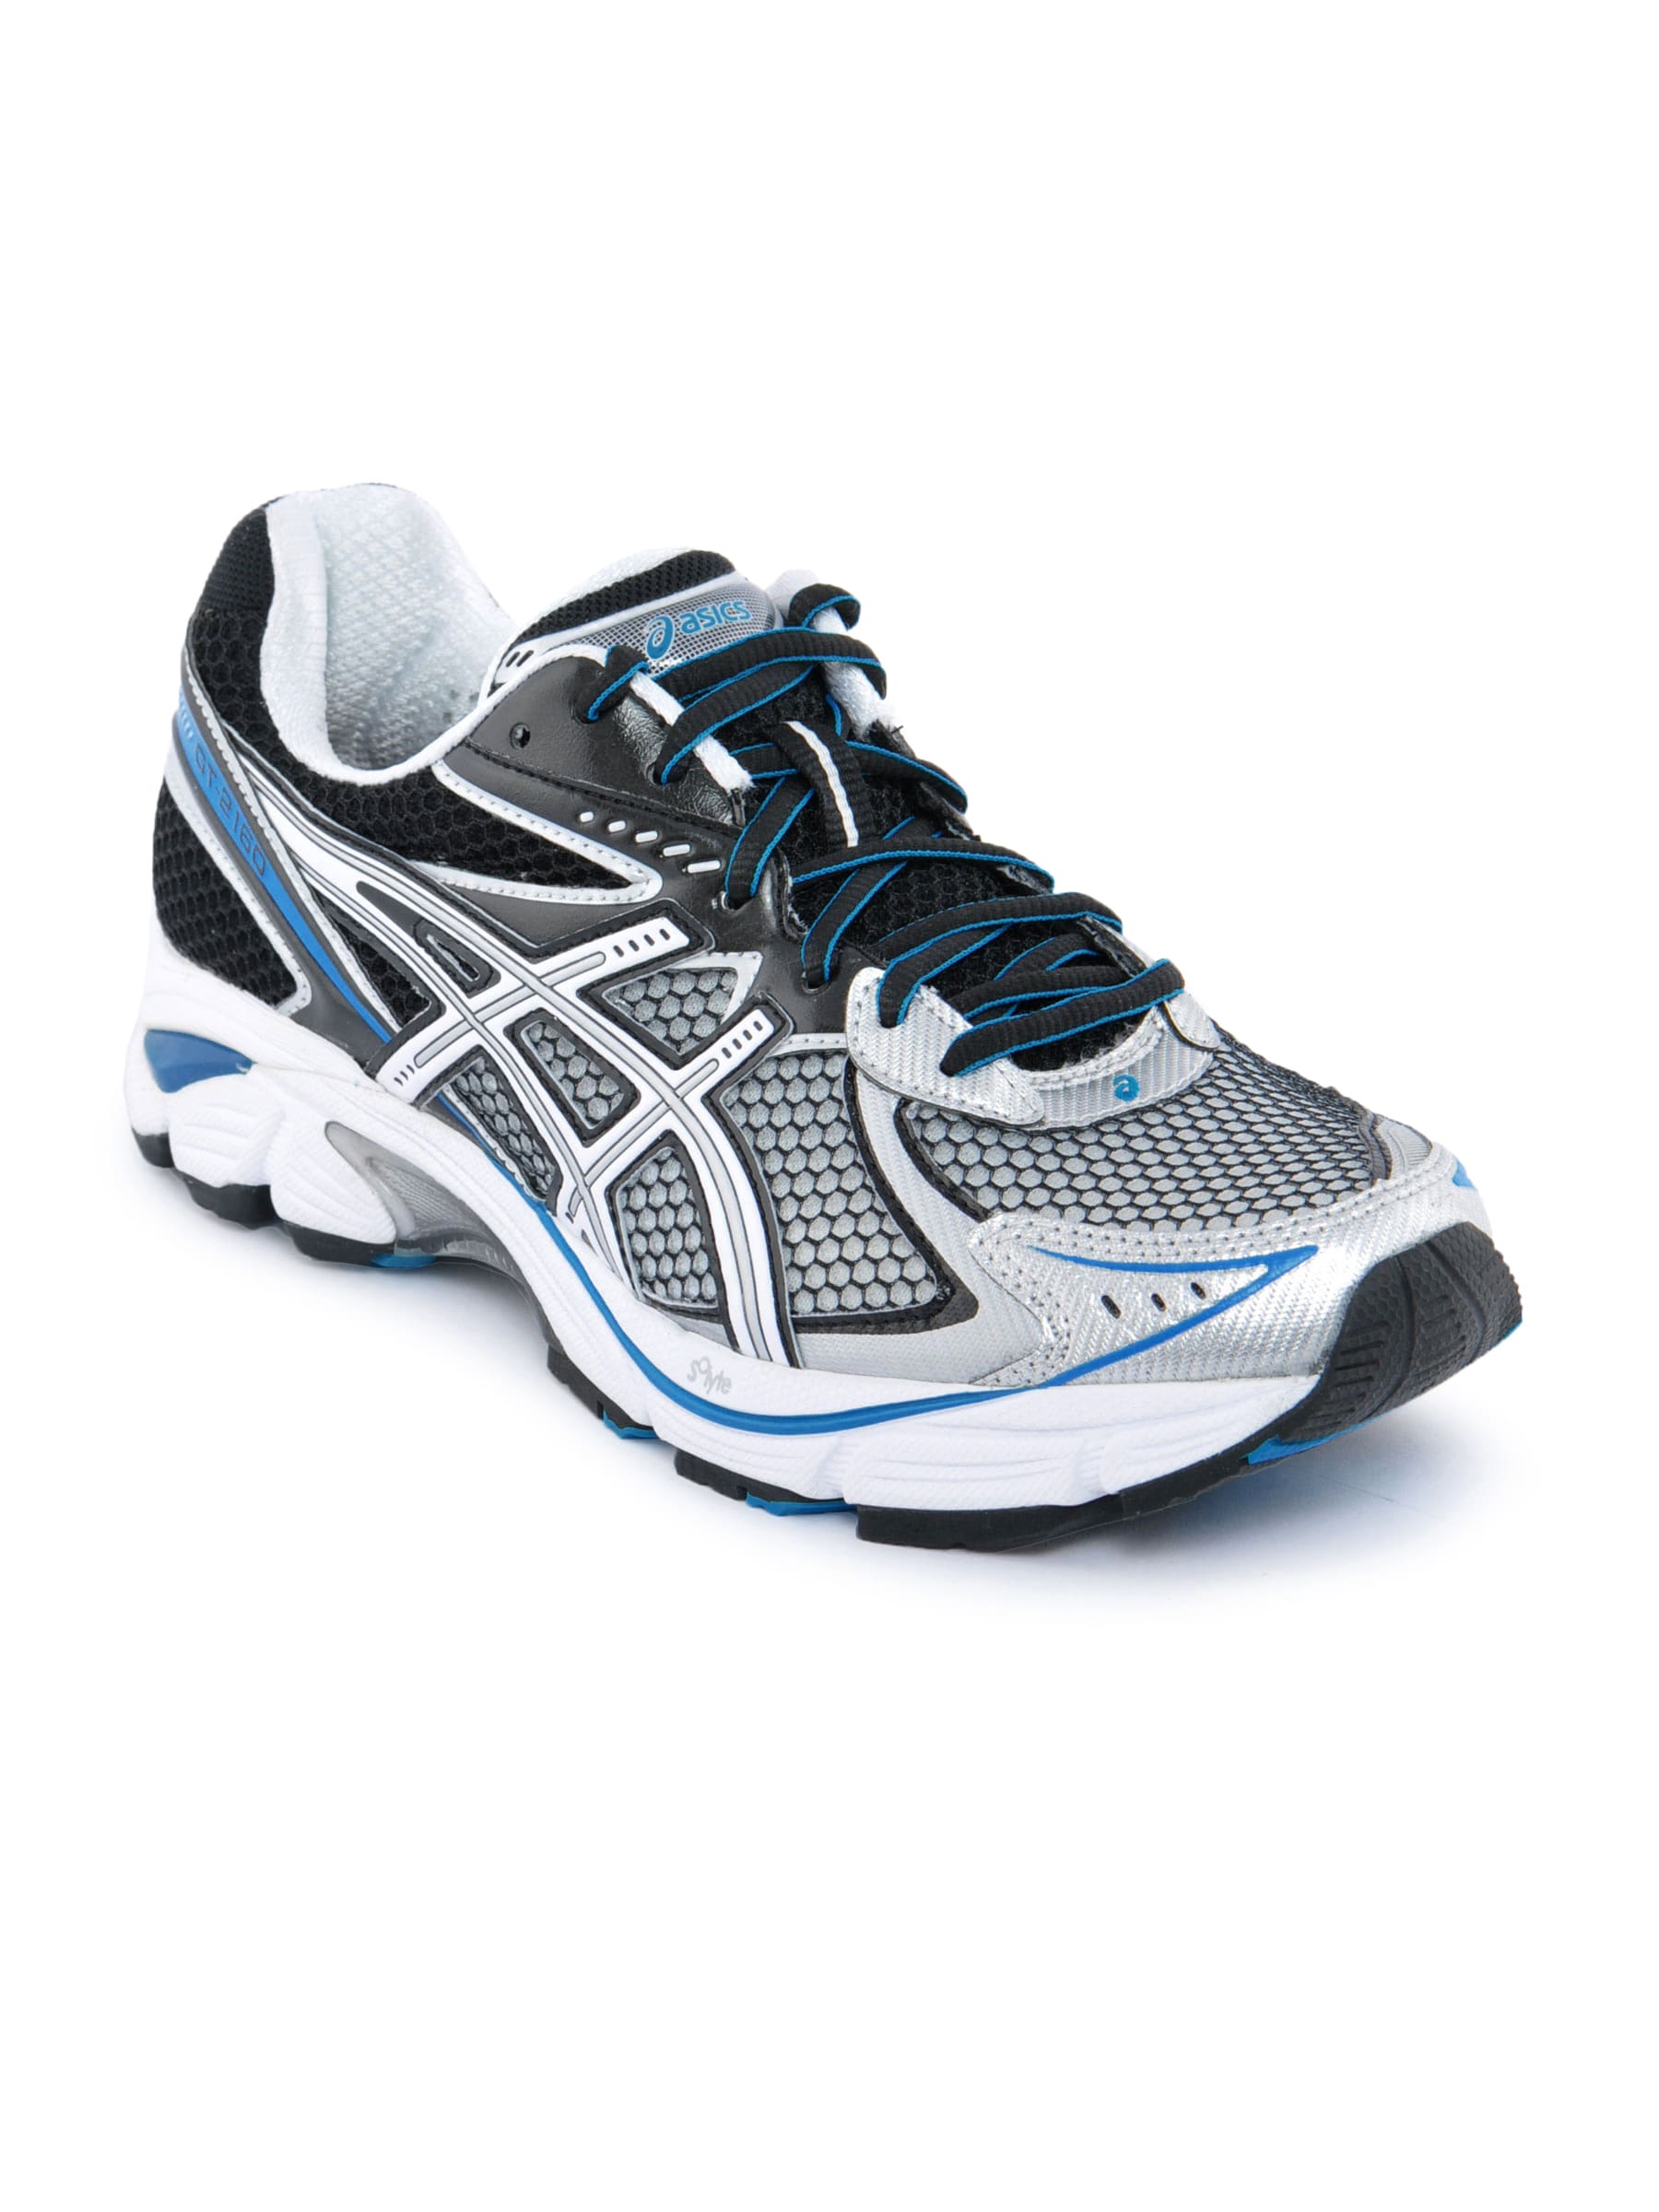 ASICS Men GT 2160 Running Blue Sports Shoes